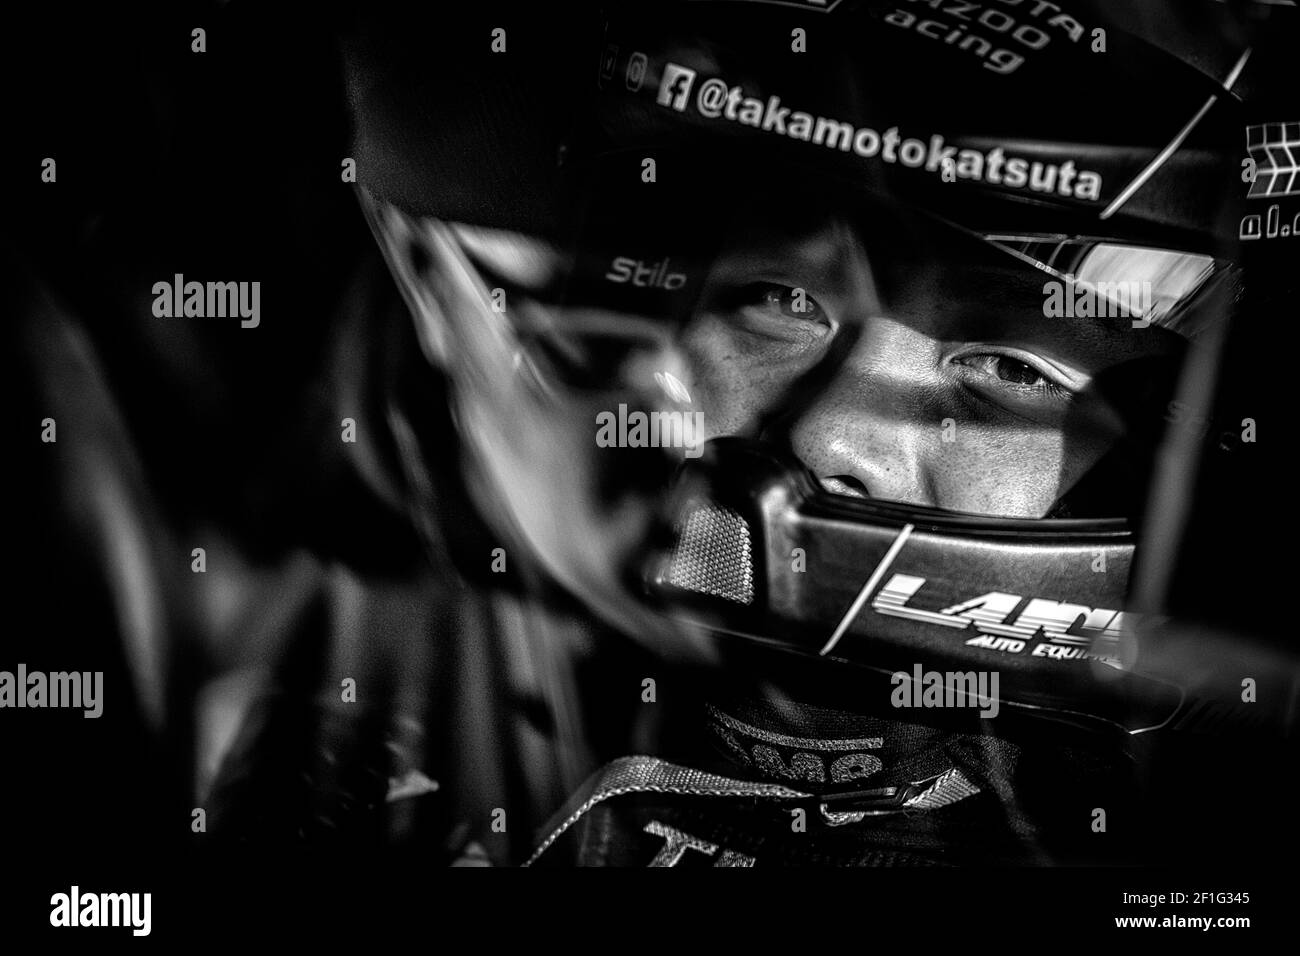 KATSUTA Takamoto (JPN), FORD FIESTA, TOMMI MAKINEN COURSE, portrait lors du Championnat du monde de rallye WRC 2019, Monte Carlo rallye du 24 au 27 janvier 2019 à Monaco - photo François Flamand / DPPI Banque D'Images